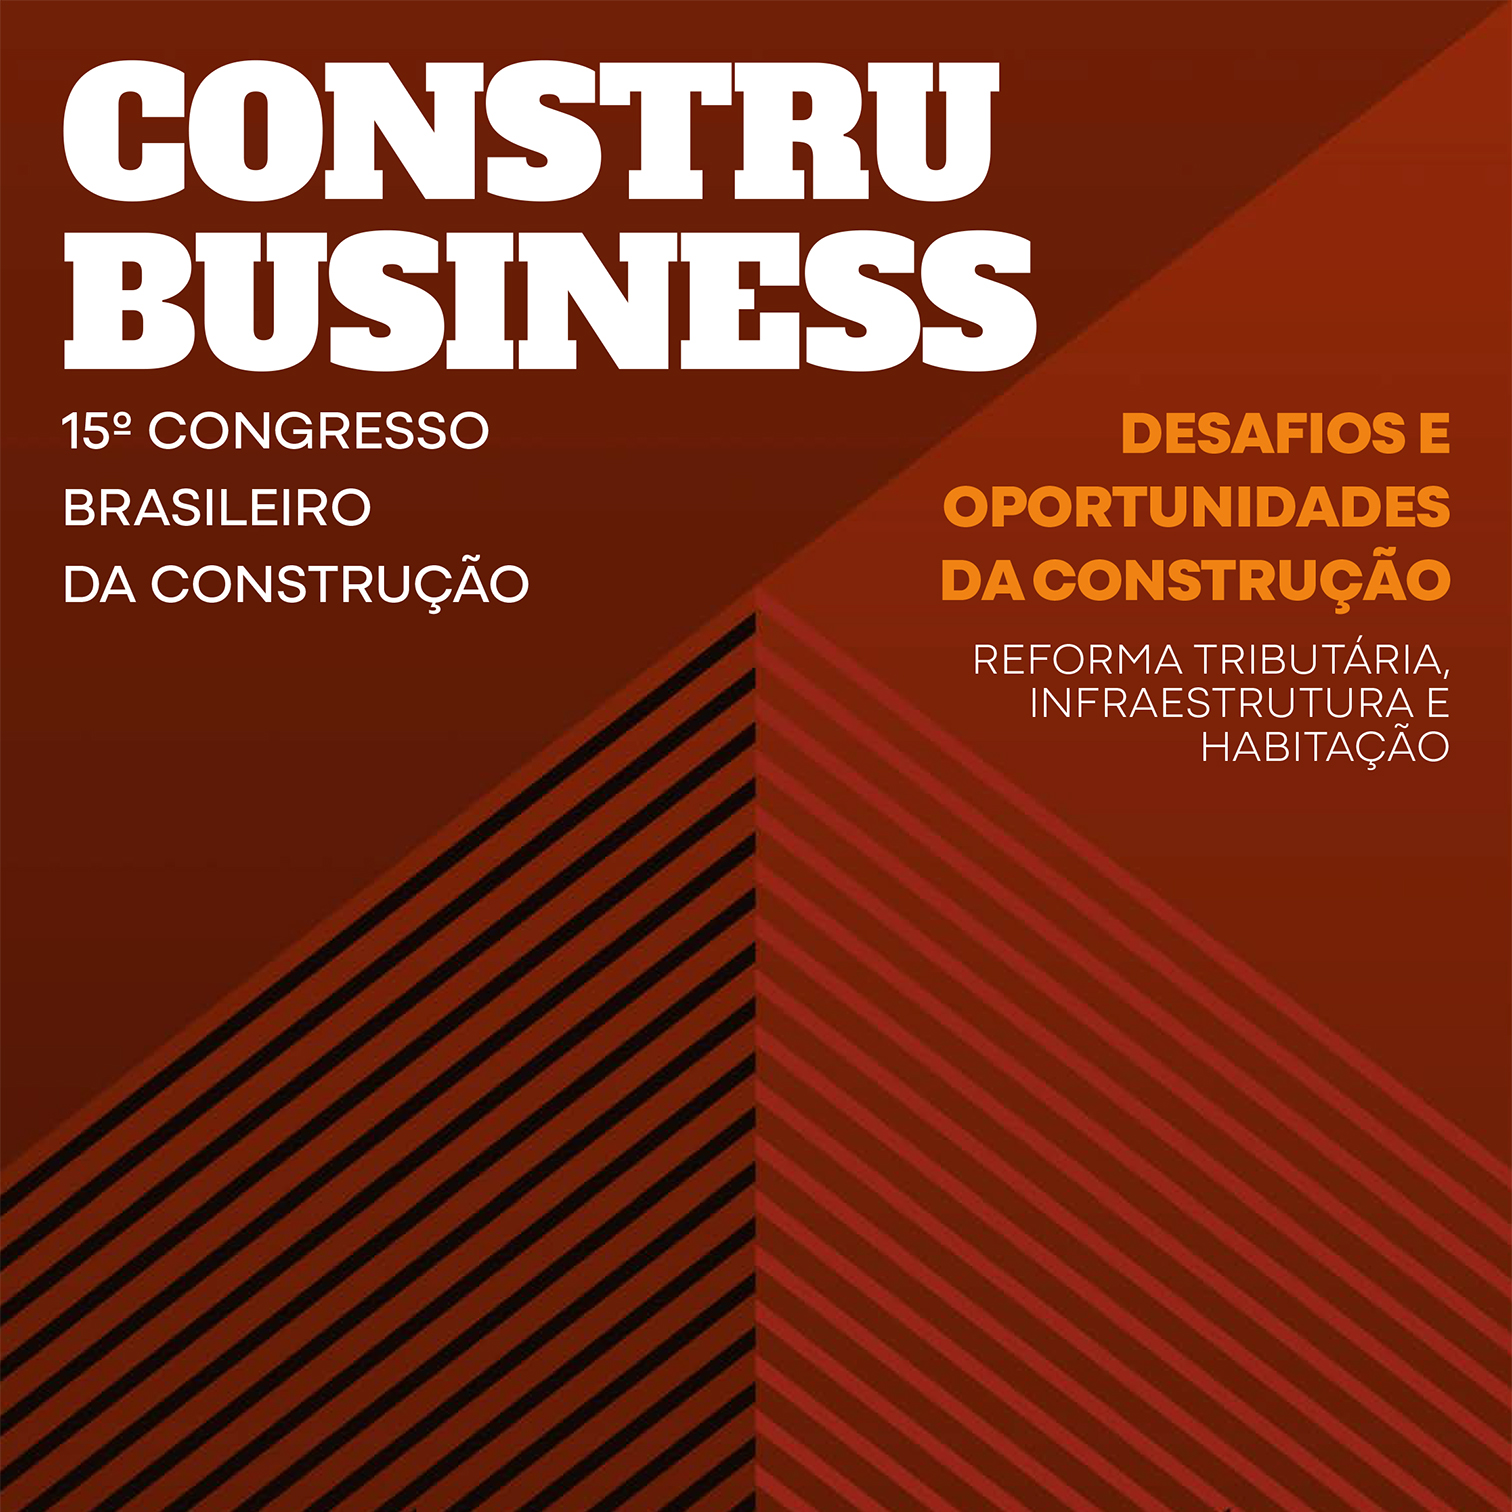 Fiesp lançou o caderno ConstruBusiness com análises temáticas sobre a indústria da construção - Estudo apresenta desafios e oportunidades do segmento no Brasil